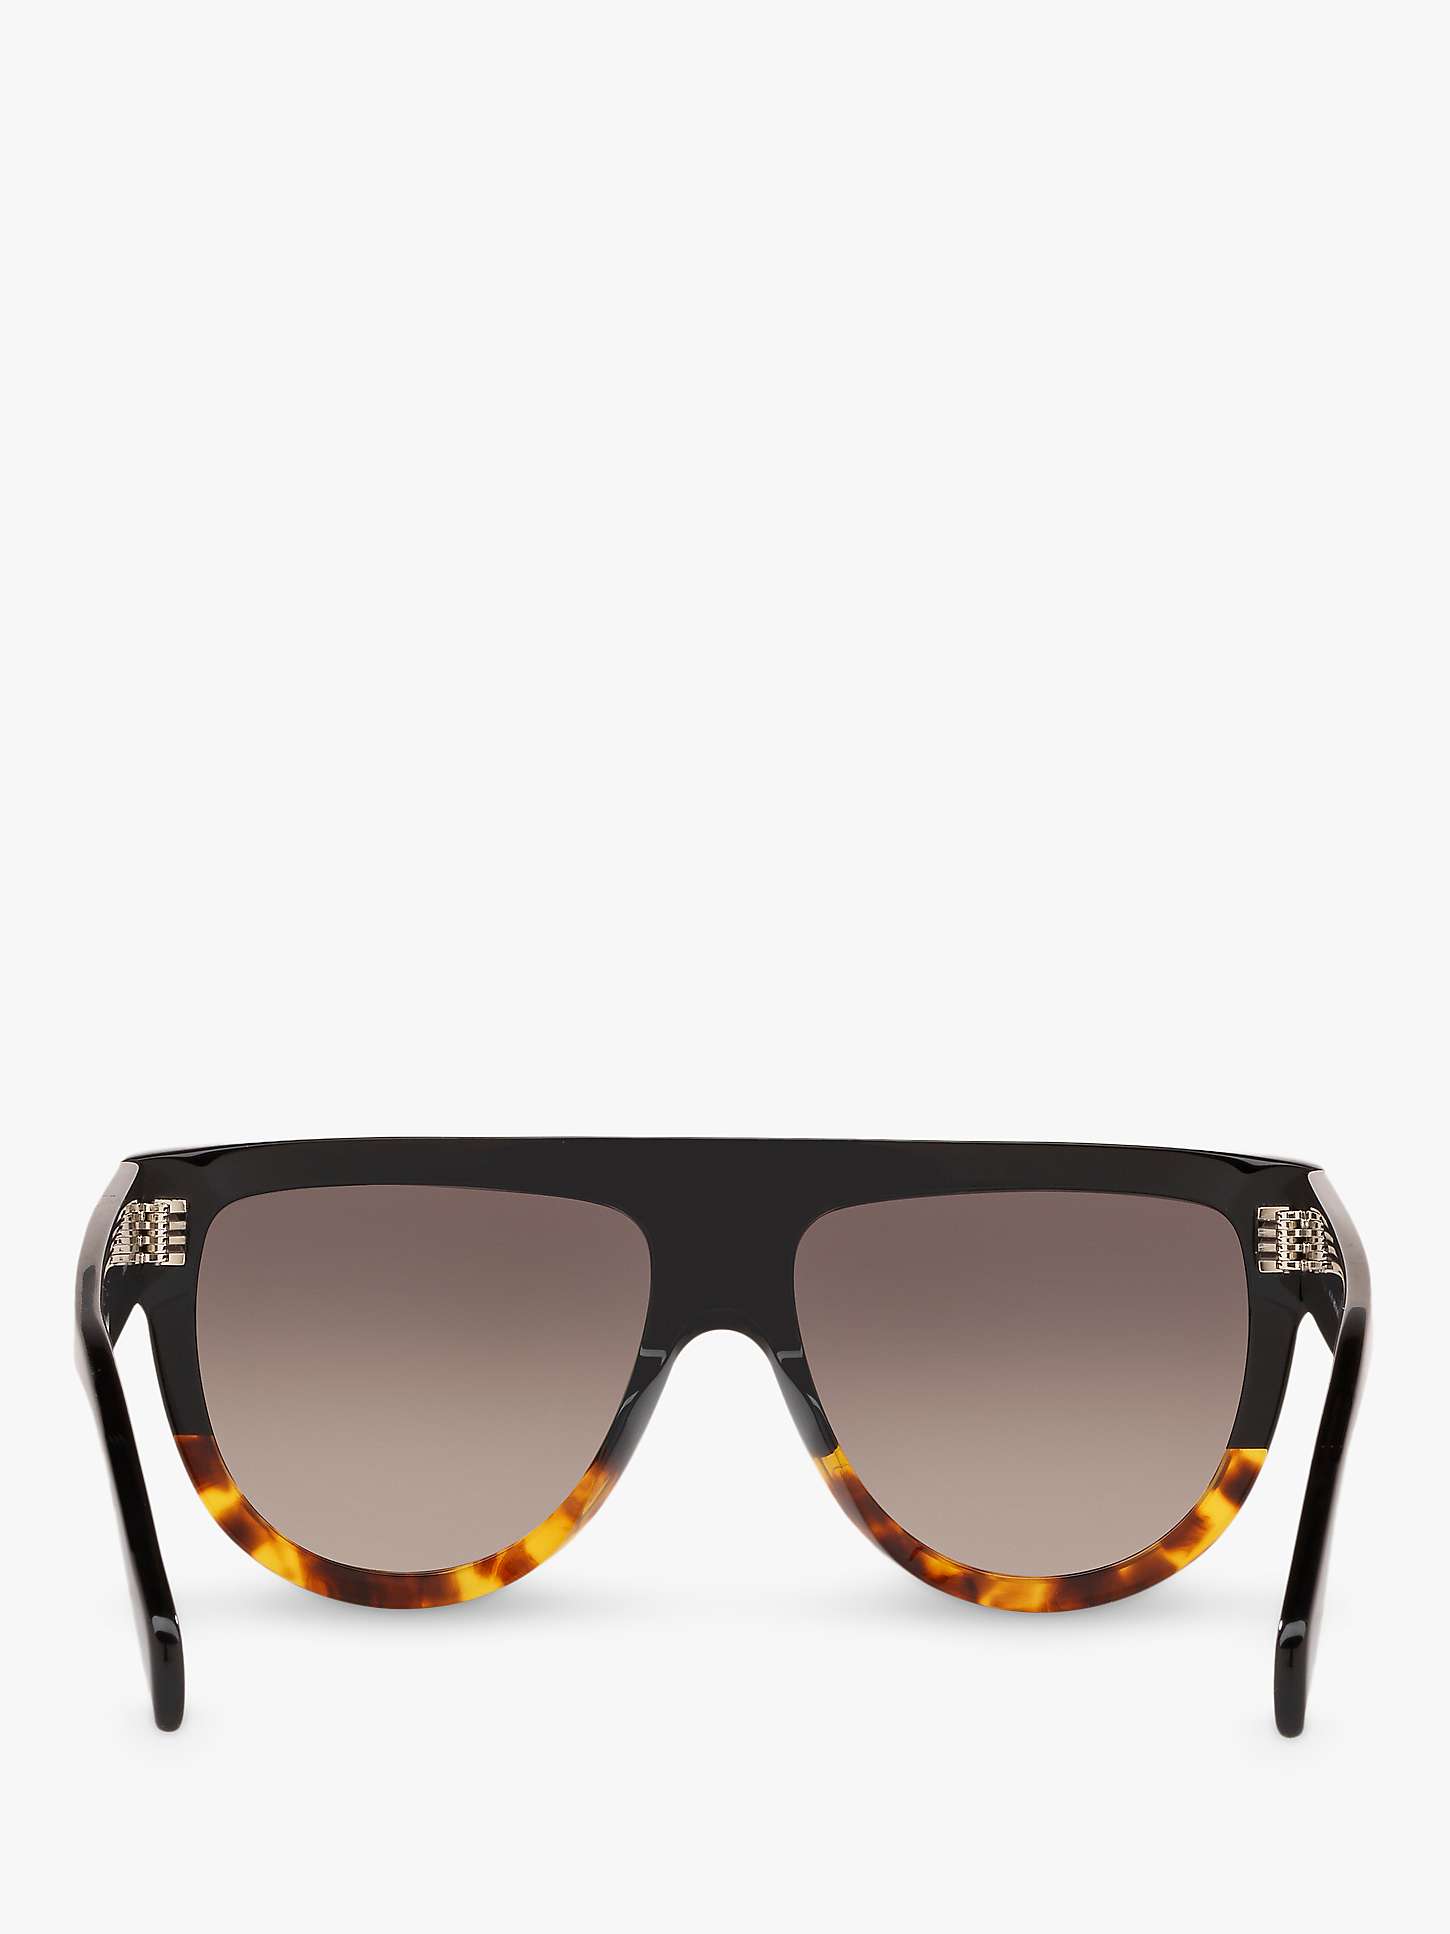 Buy Celine CL4001IN Women's Rectangular Sunglasses, Black Havana/Brown Gradient Online at johnlewis.com